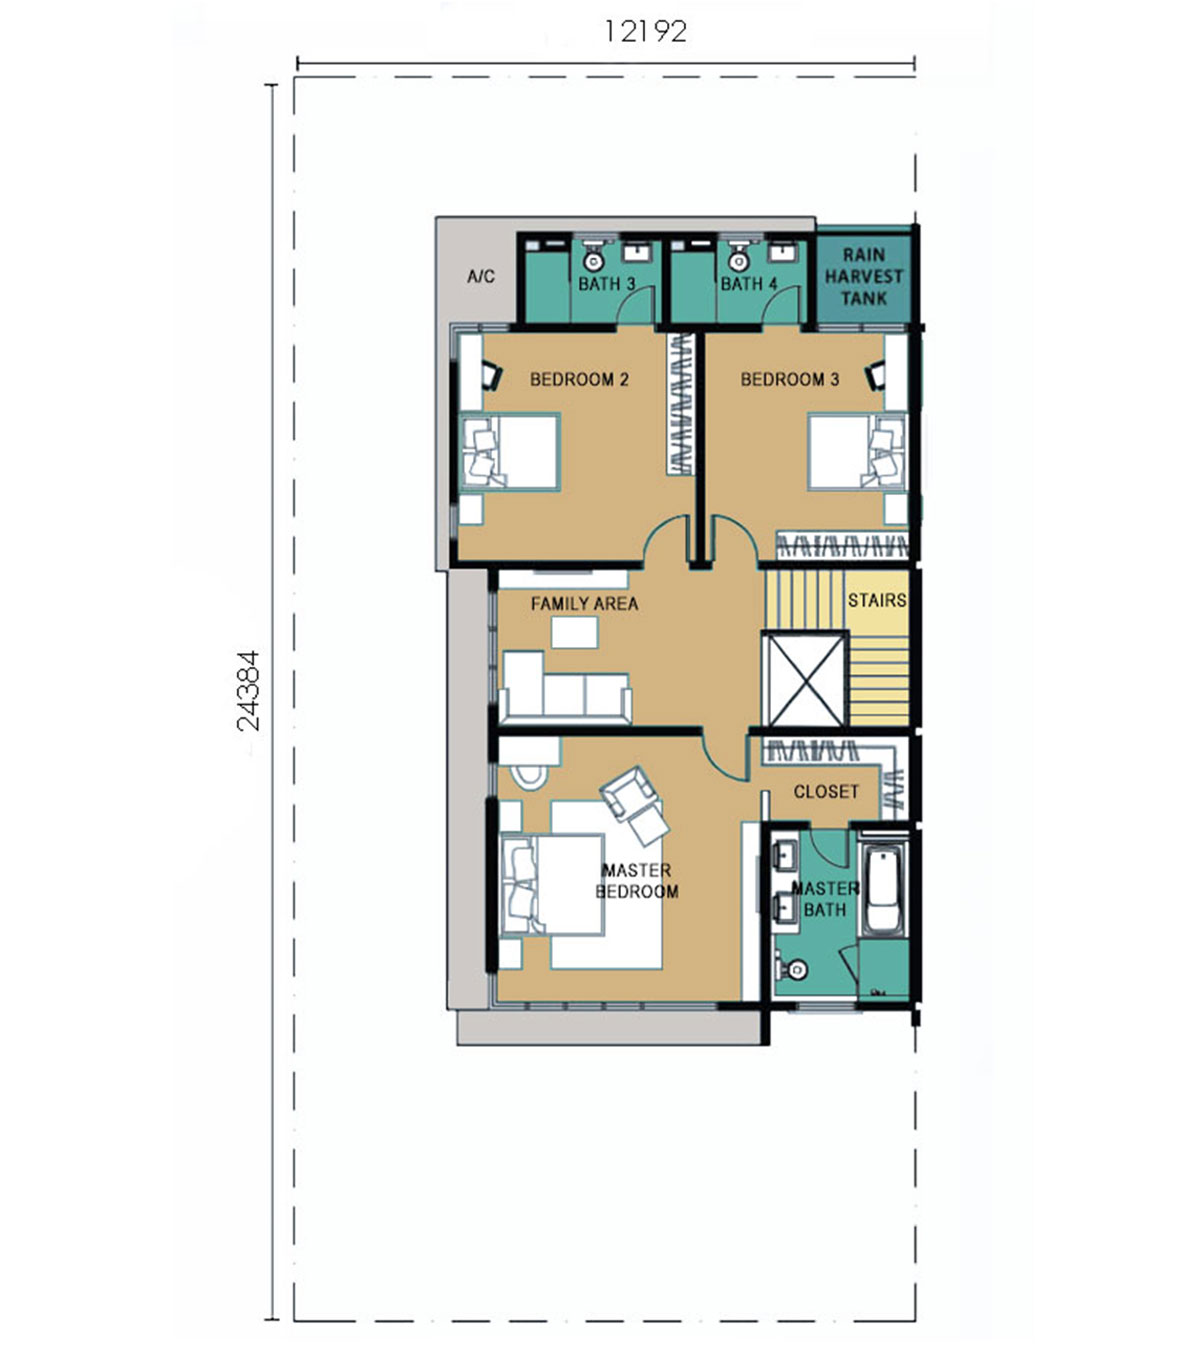 3-Storey Semi-Detached - Type B - Second Floor,3-Storey Semi-Detached - Type B - Second Floor